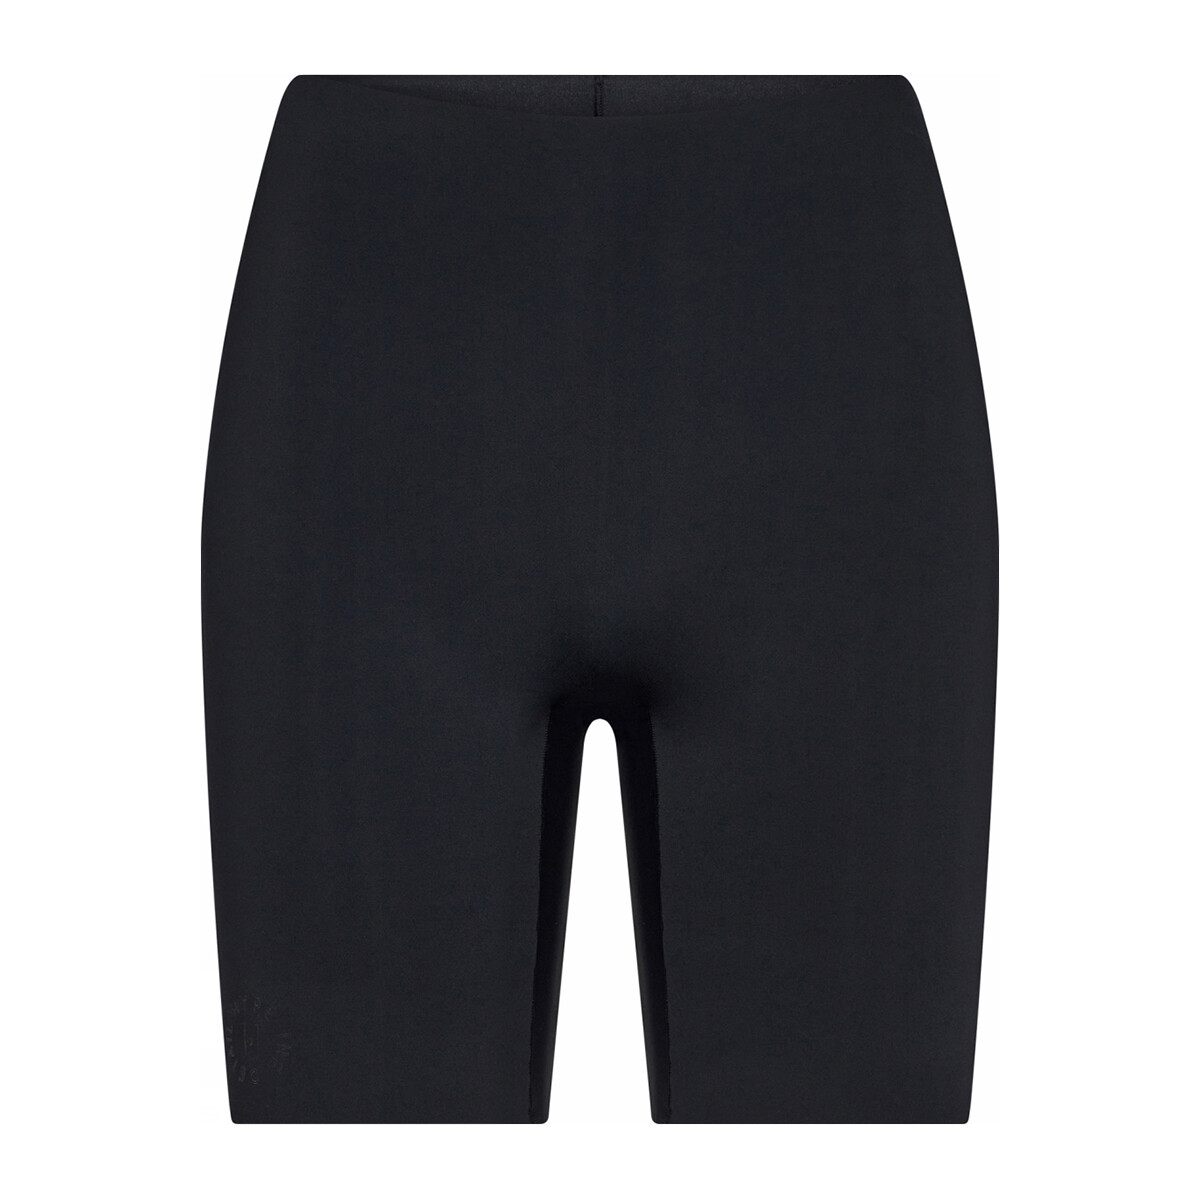 Hype The Detail Essentials Shorts, Farve: Sort, Størrelse: L, Dame